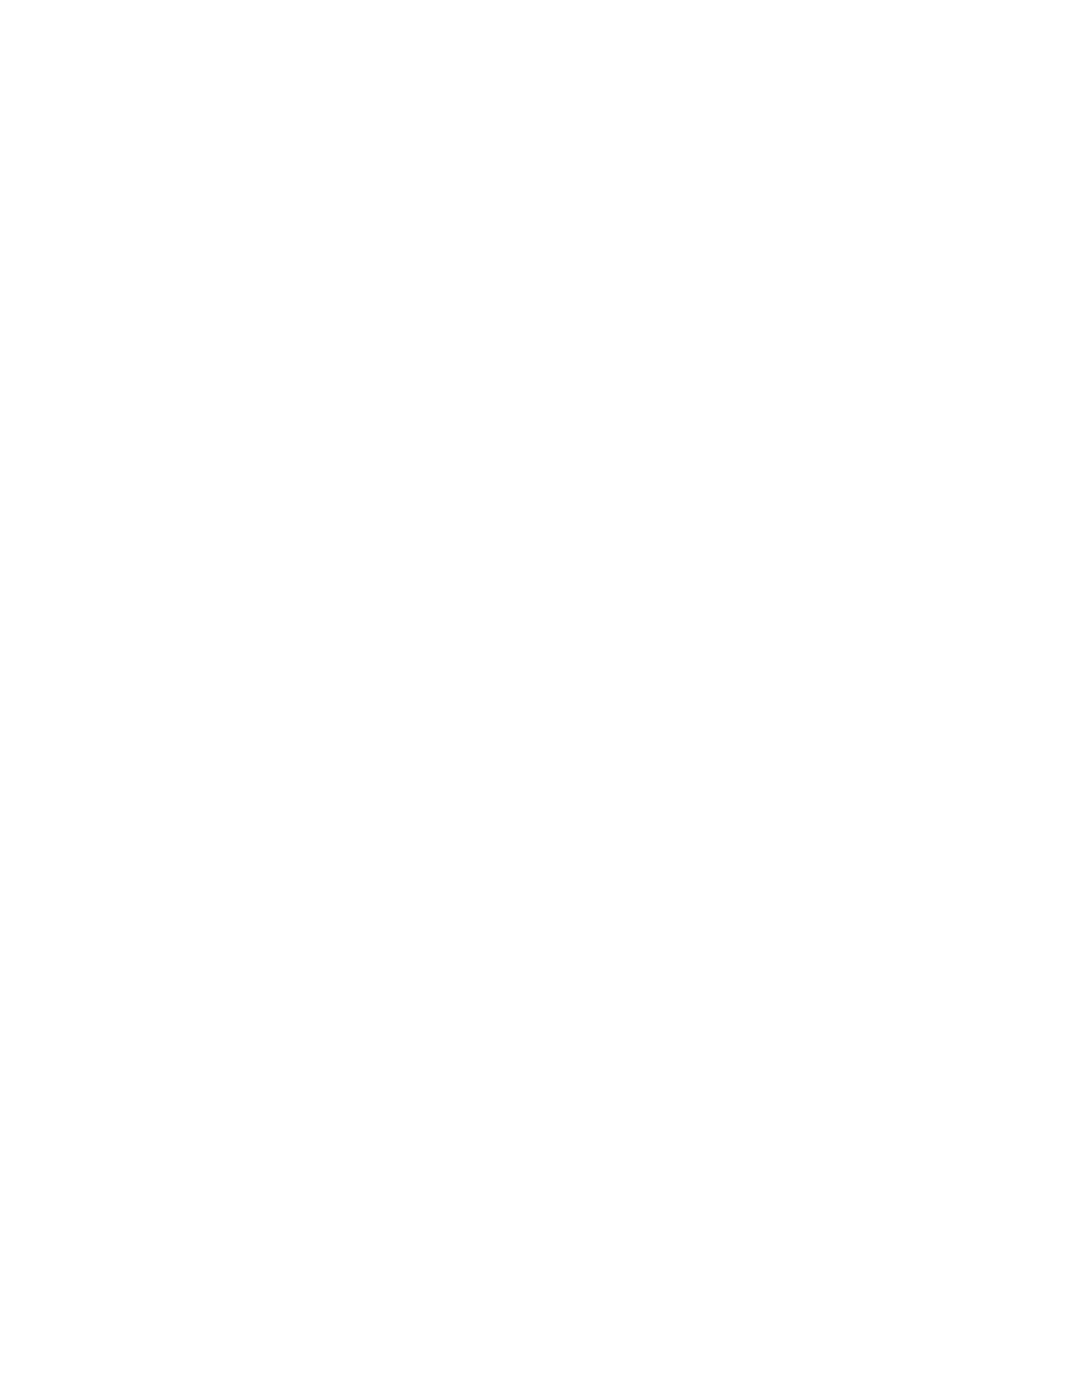 Catalin Media